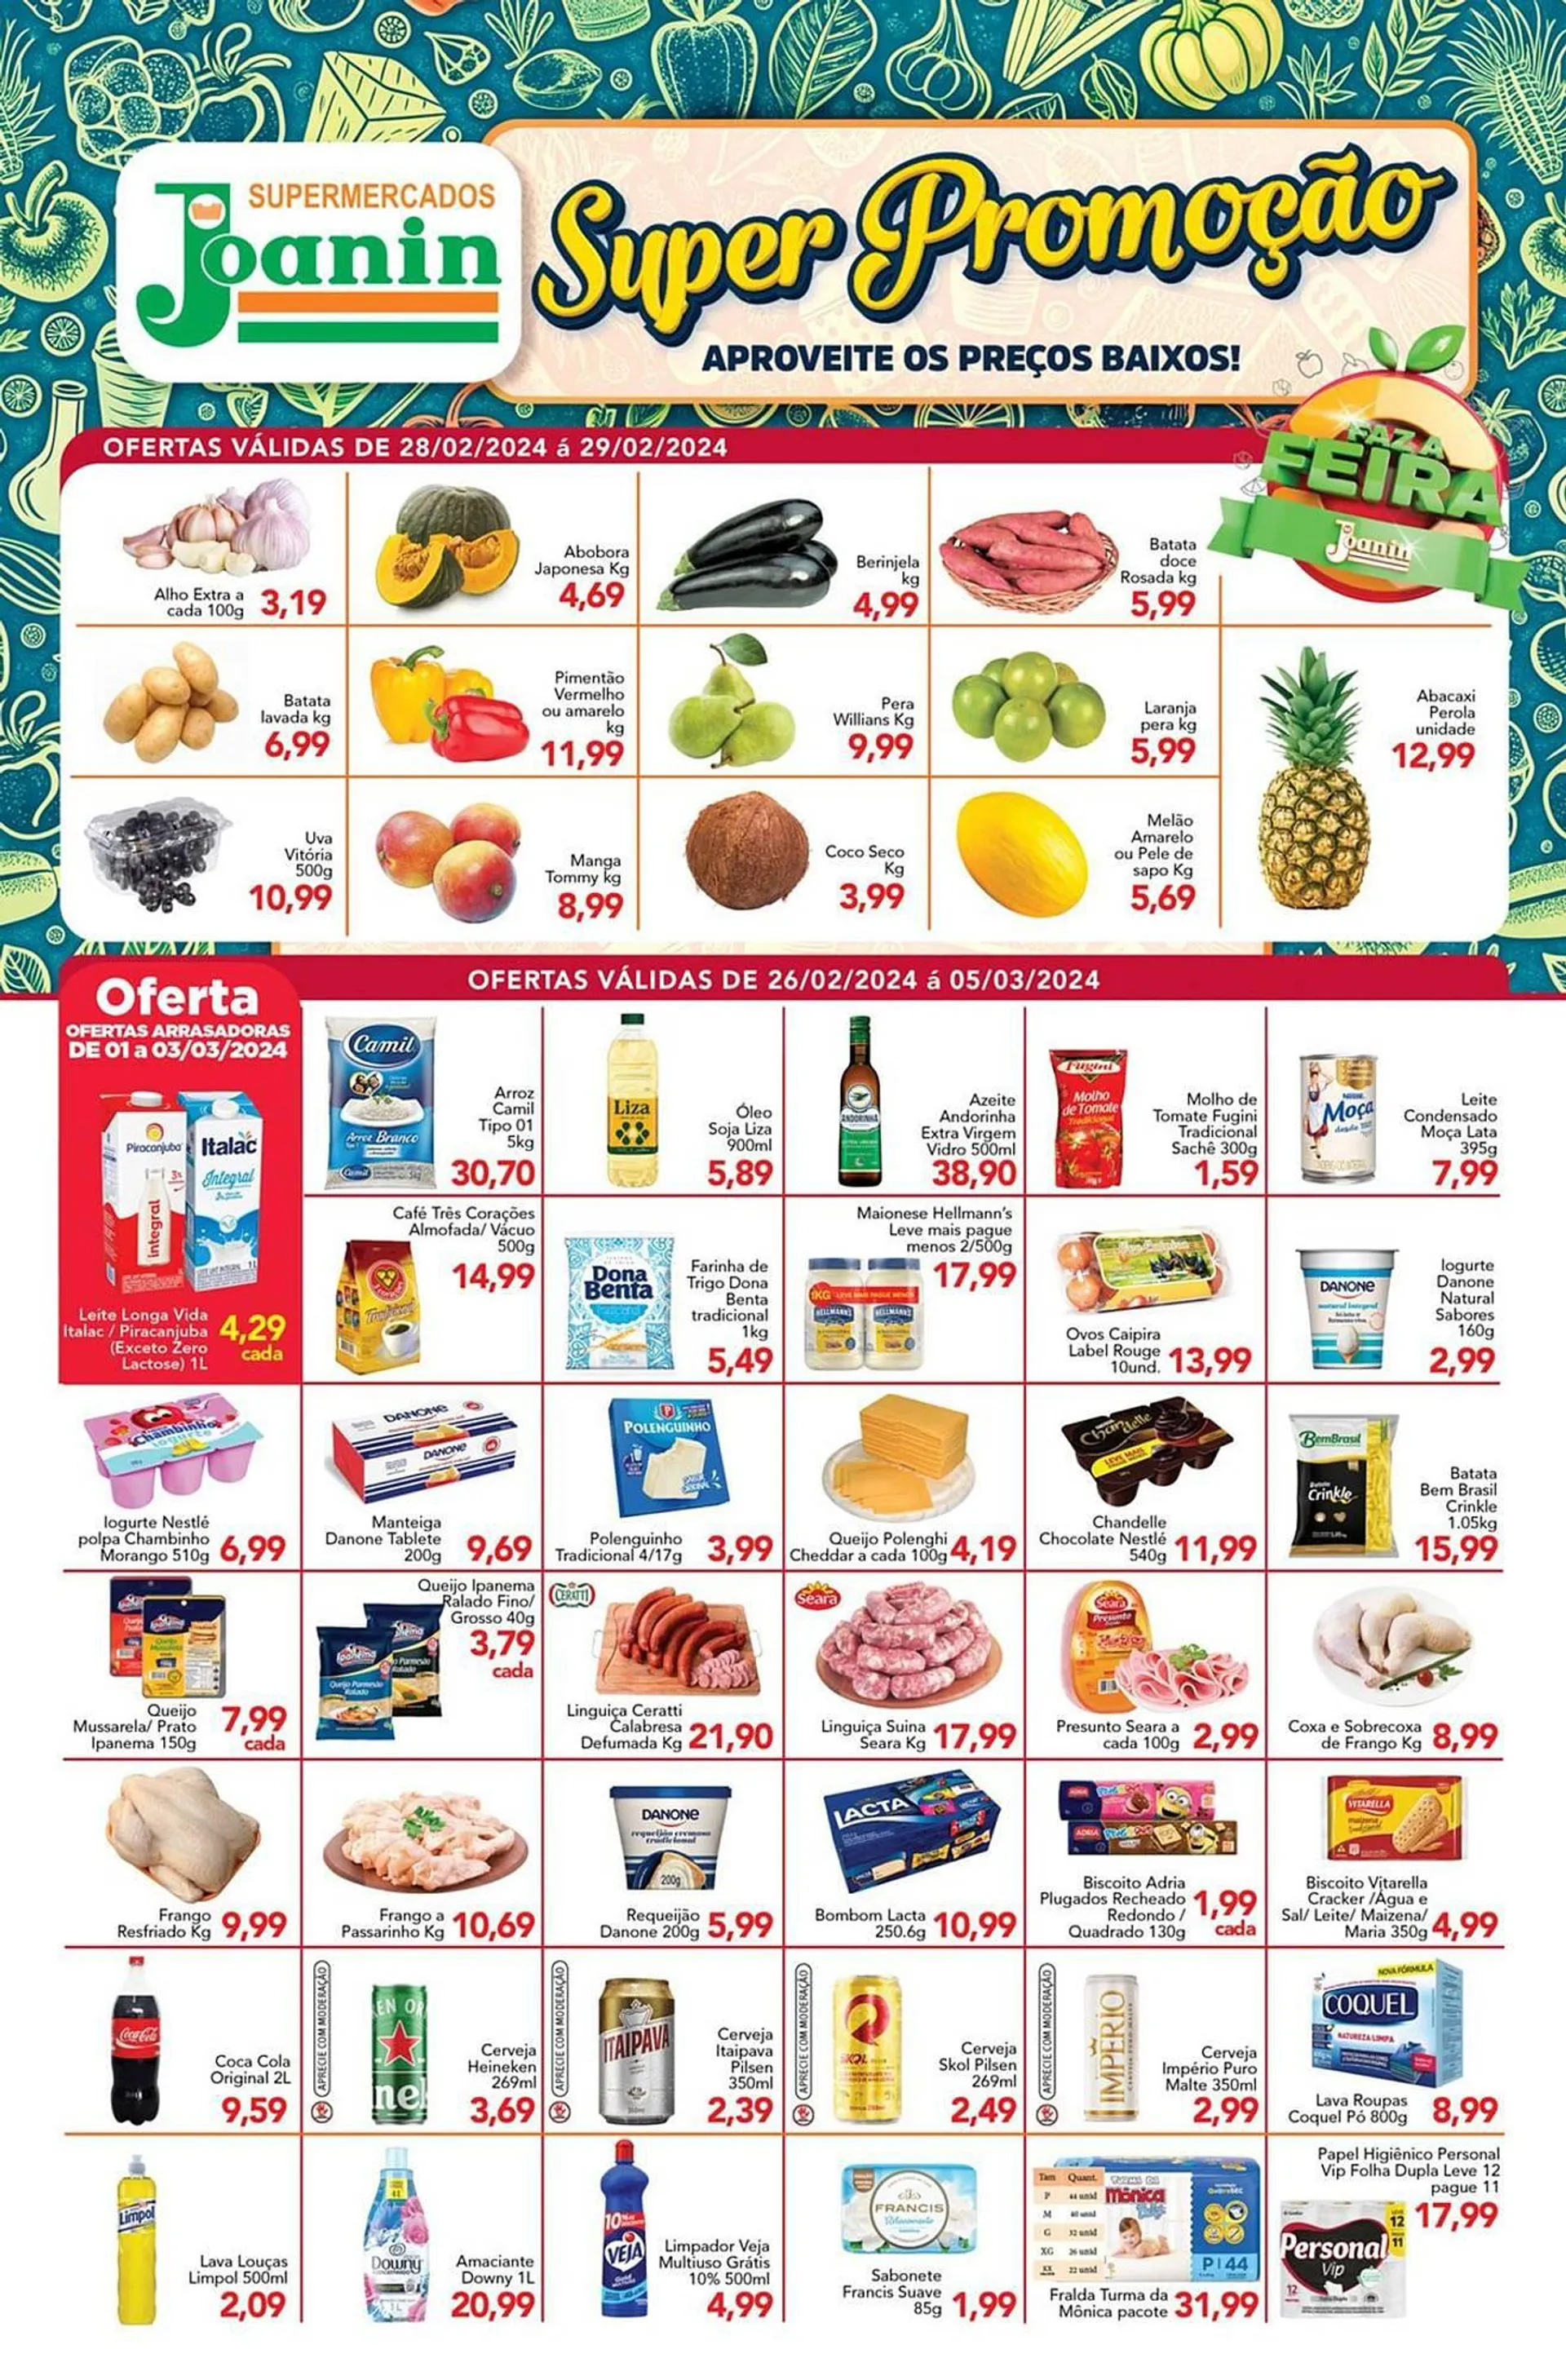 Encarte de Catálogo Supermercados Joanin 27 de fevereiro até 5 de março 2024 - Pagina 